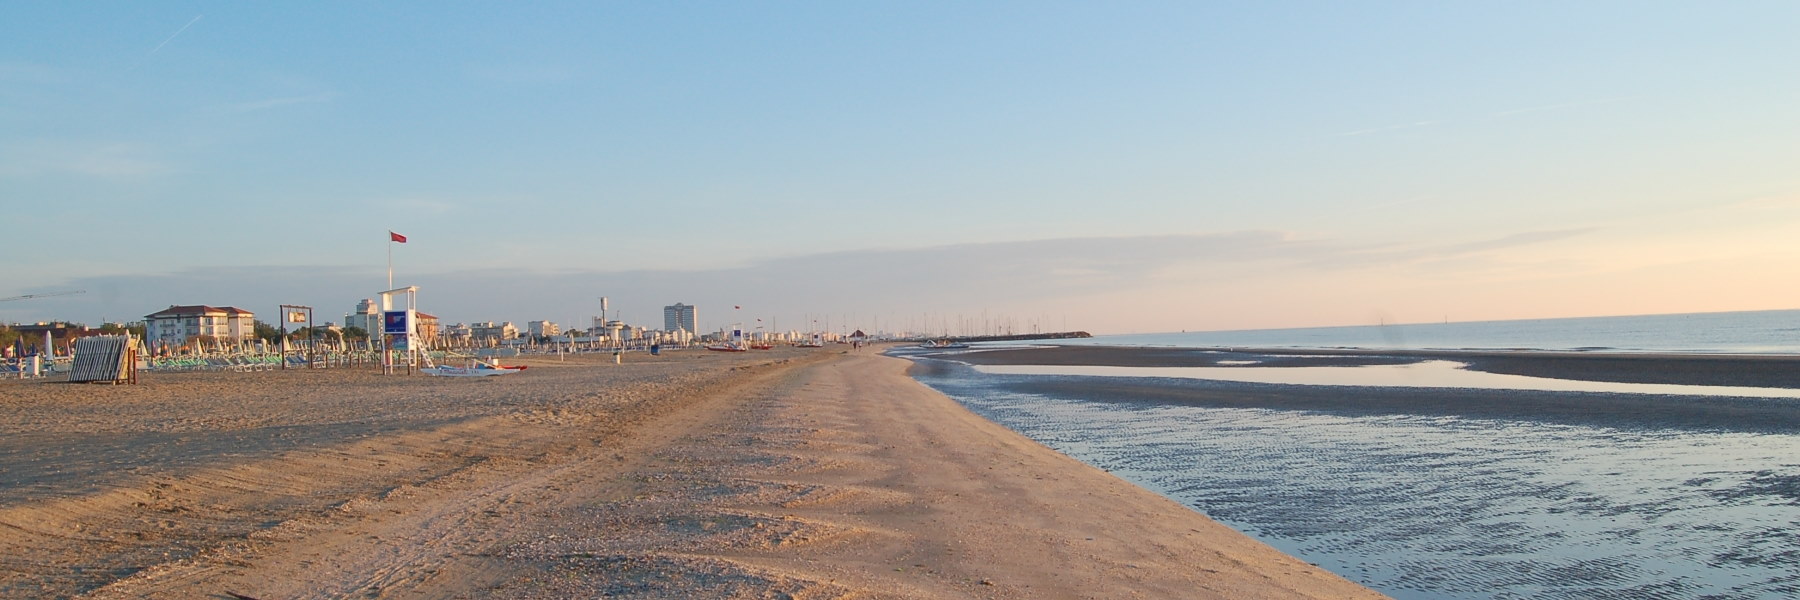 188 Etablissement Balnéaire Spiaggia